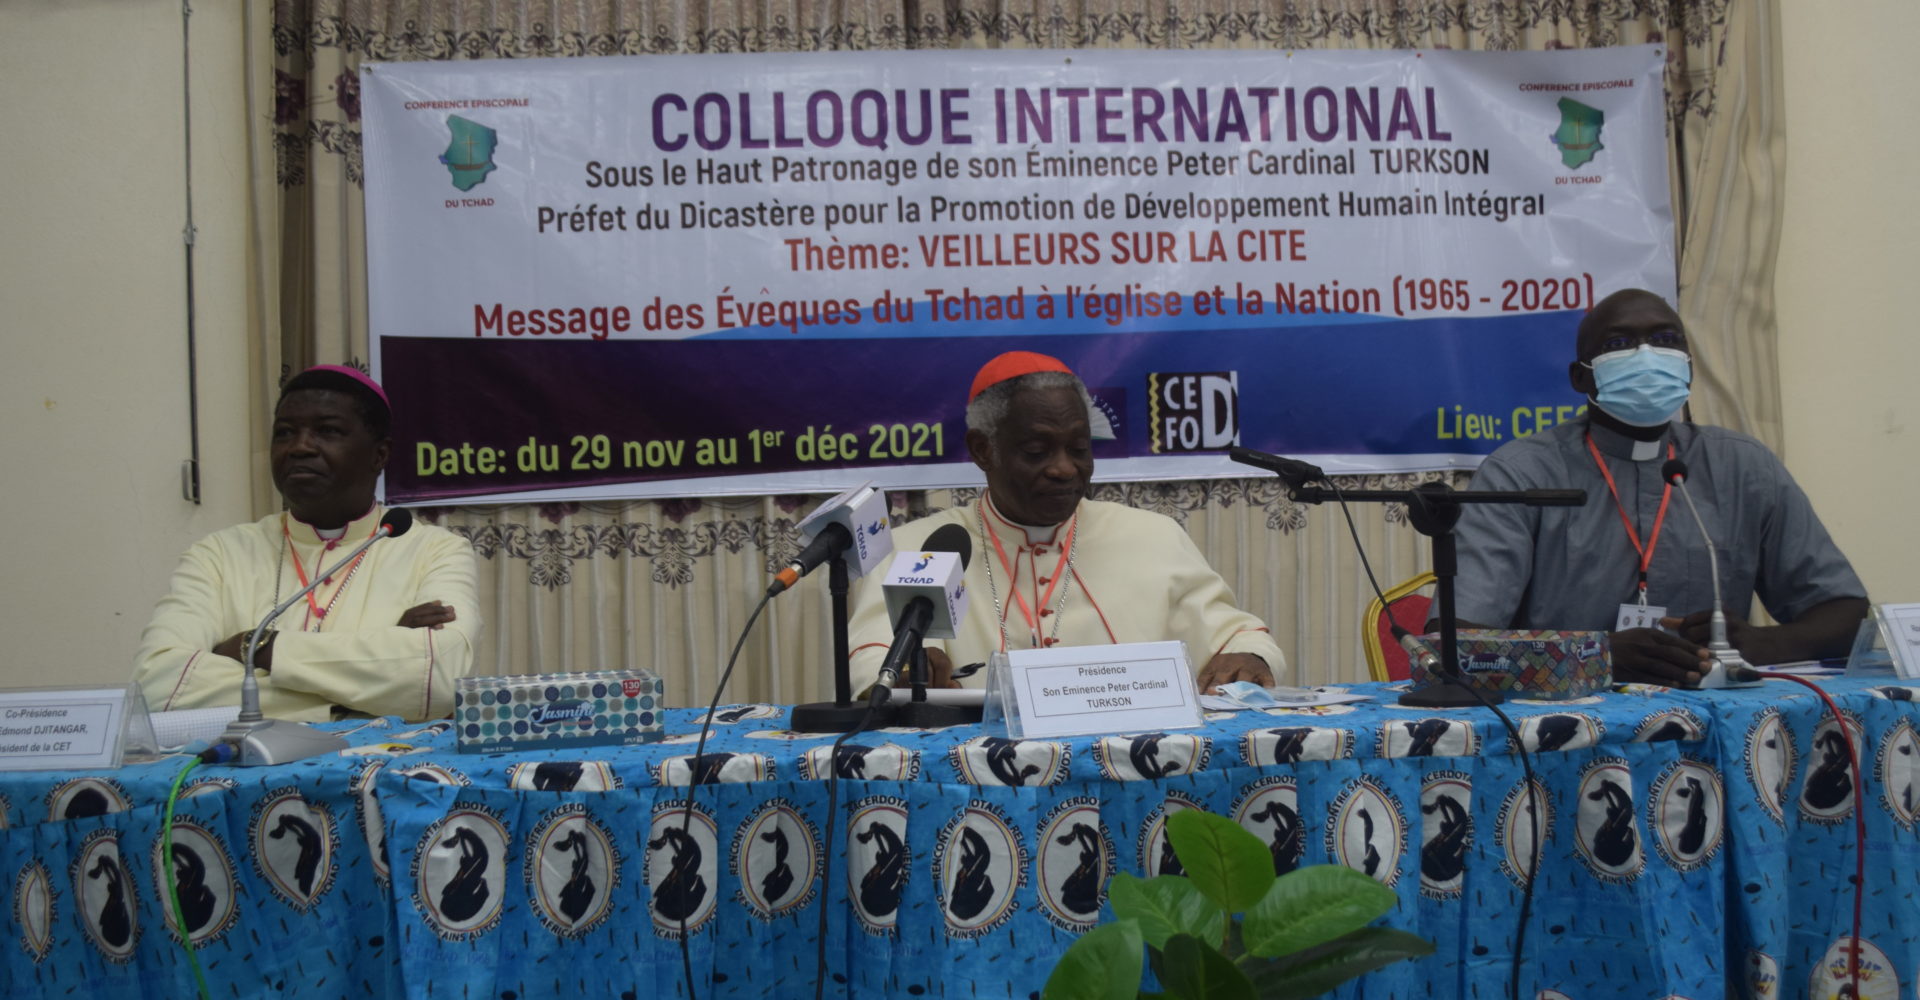 Ouverture officielle du colloque international des messages des évêques du Tchad 1